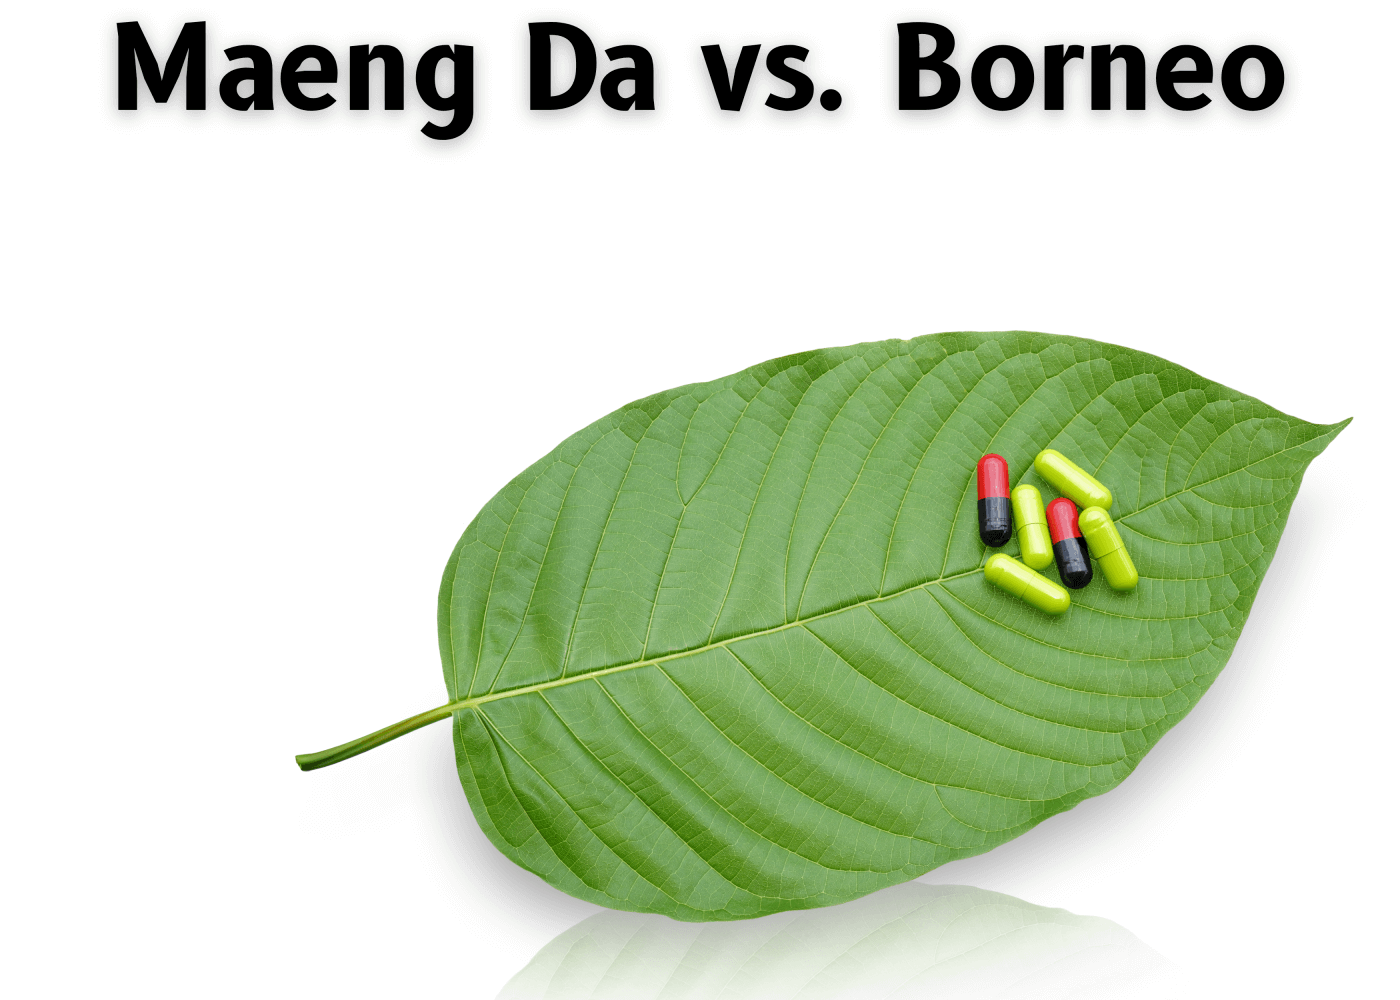 Maeng Da versus Borneo Comparison